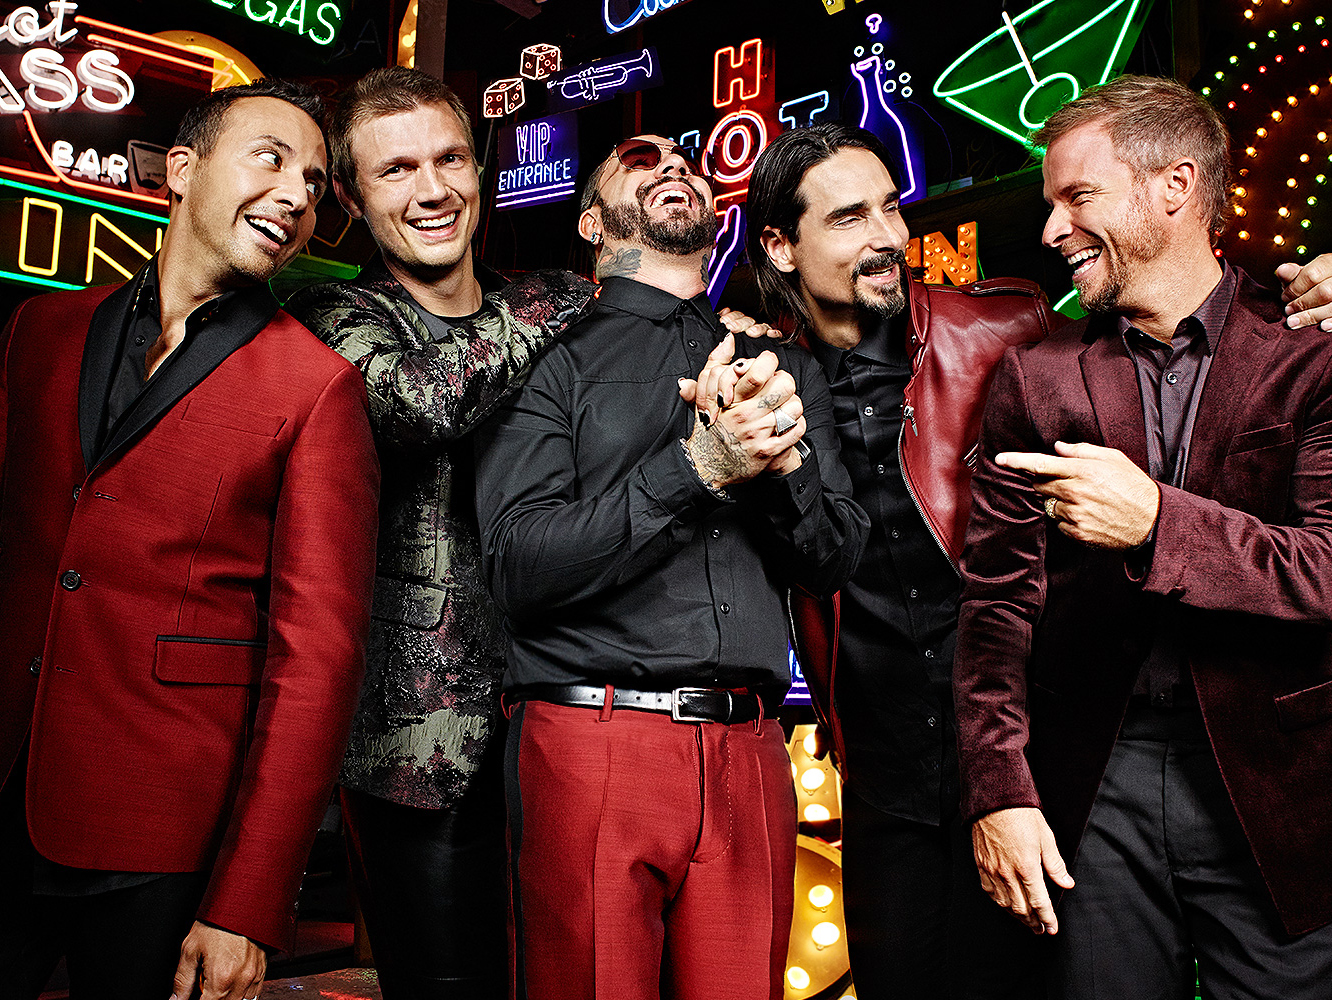  Backstreet Boys se entregan al baile en su primer single y vídeo en un lustro, ‘Don’t Go Breaking My Heart’